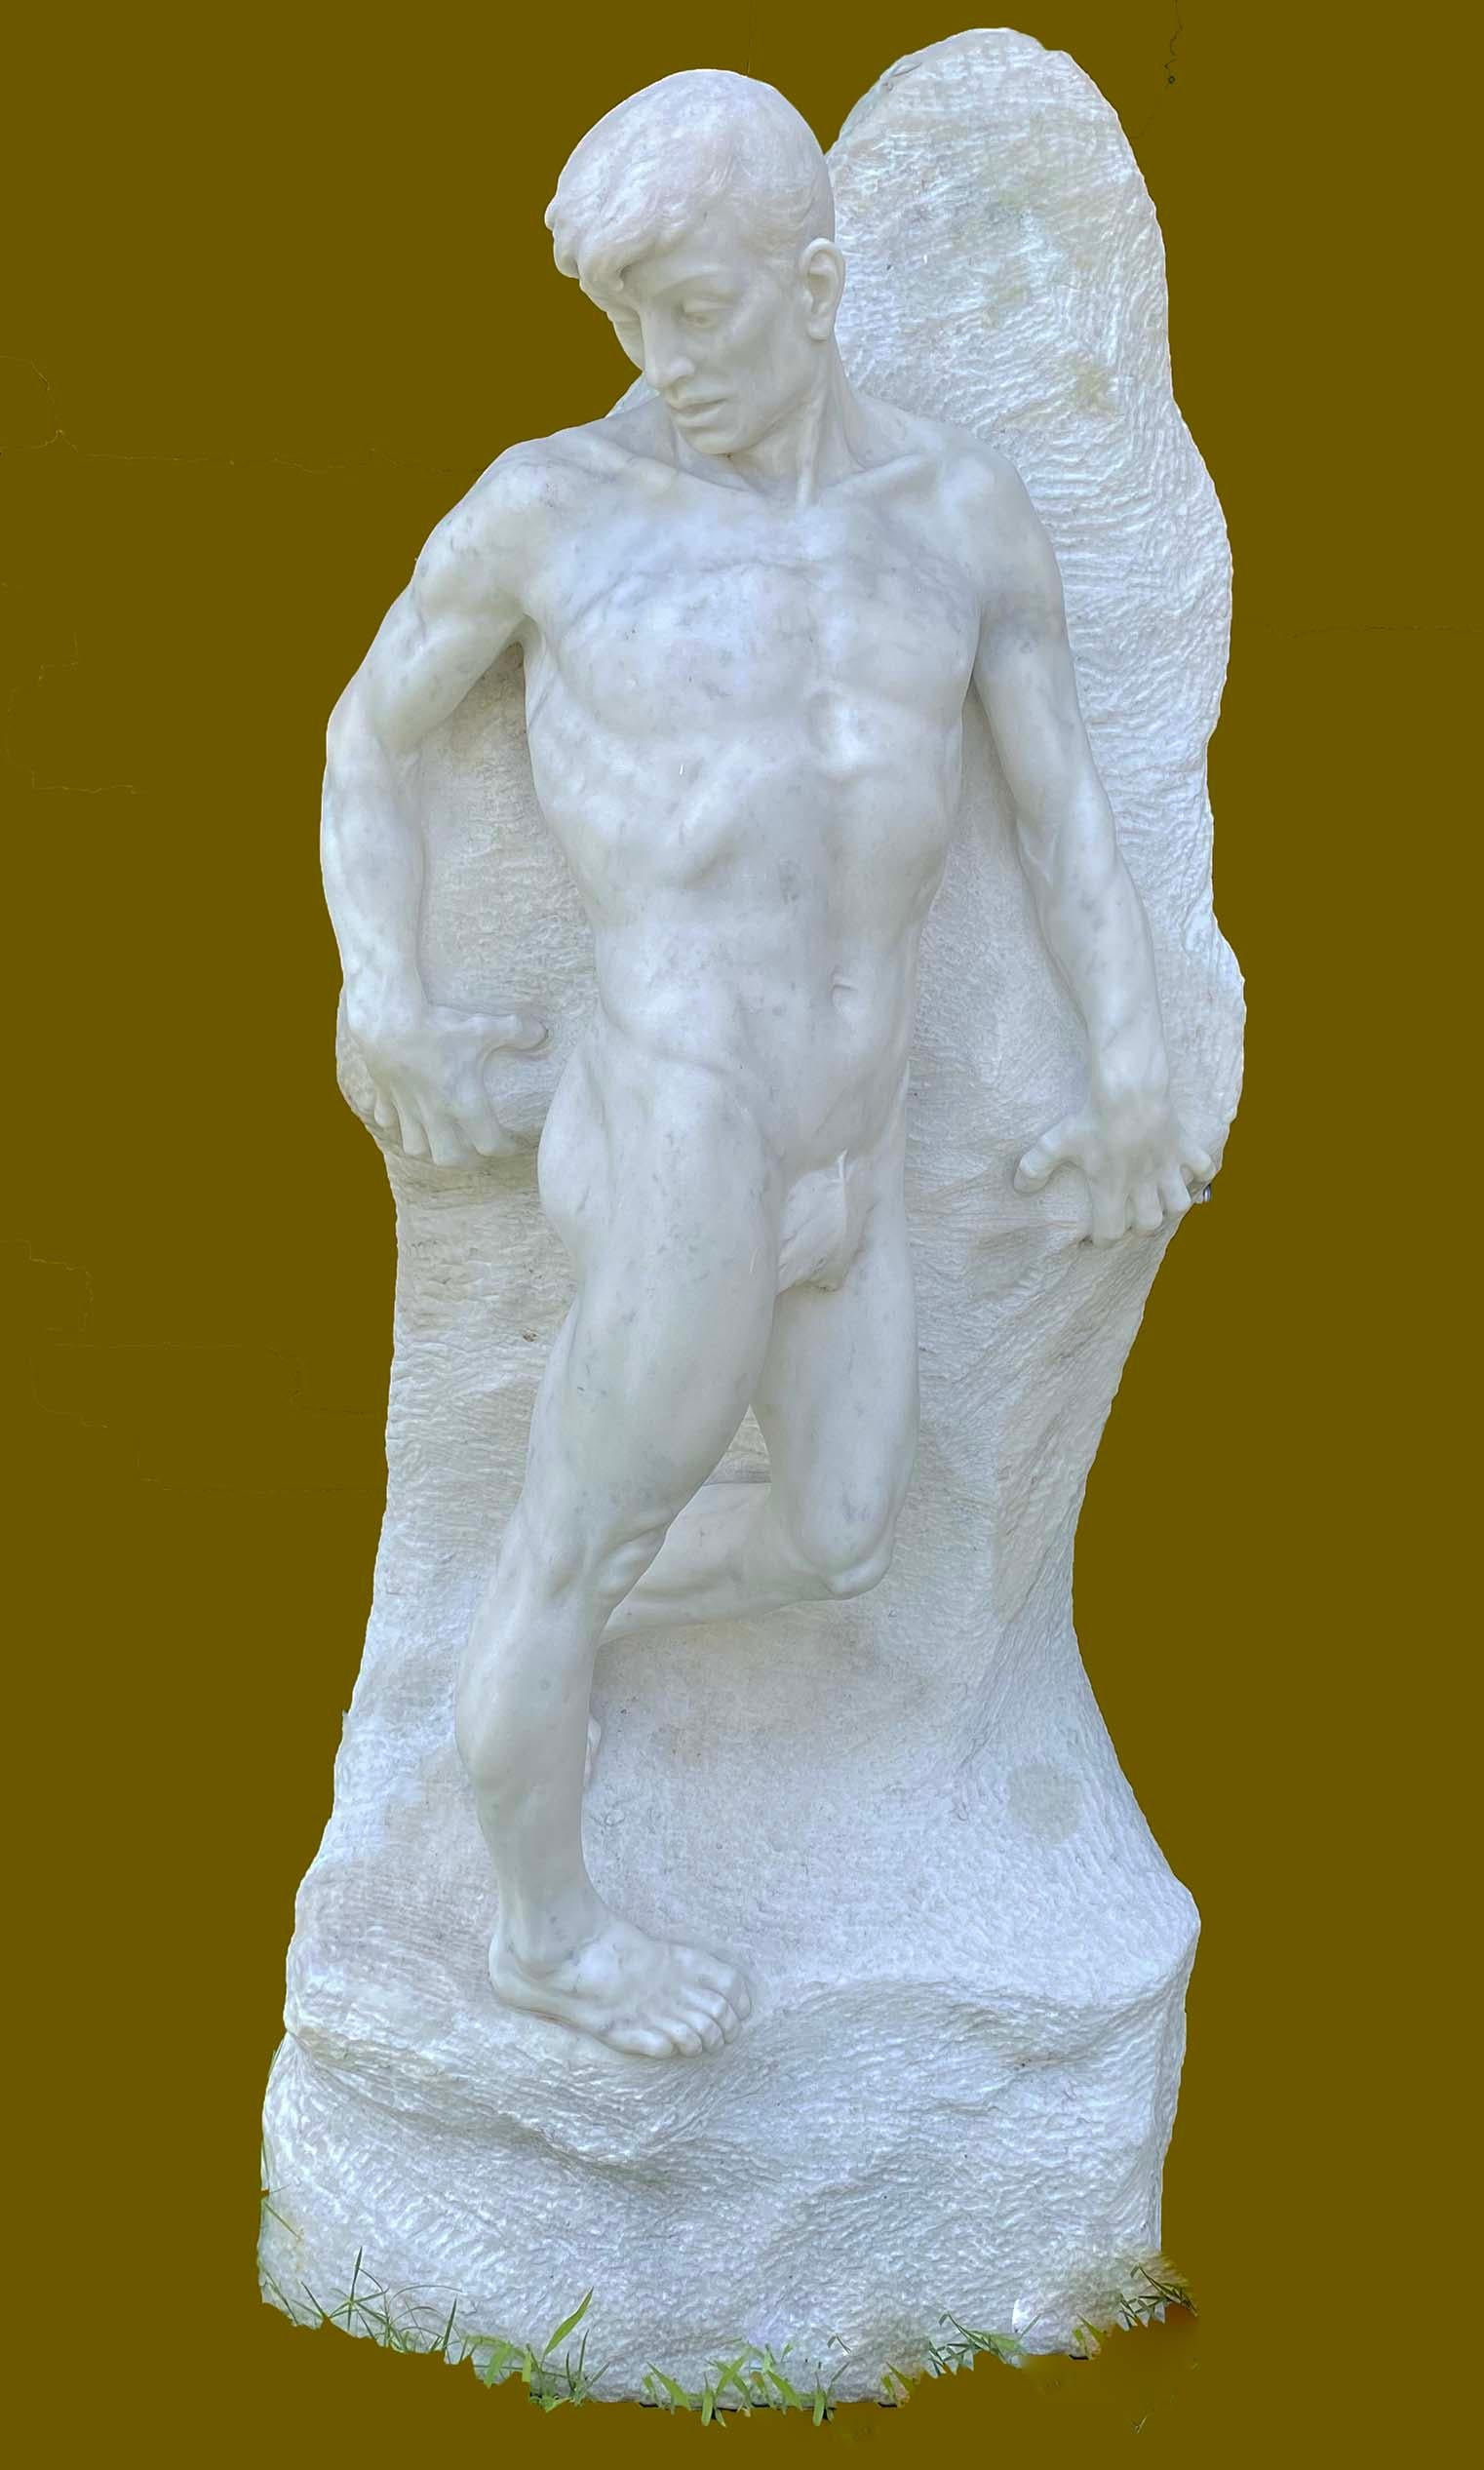 PROFESSOR ENRICO GARIBALDI Nude Sculpture - L'ABISSO